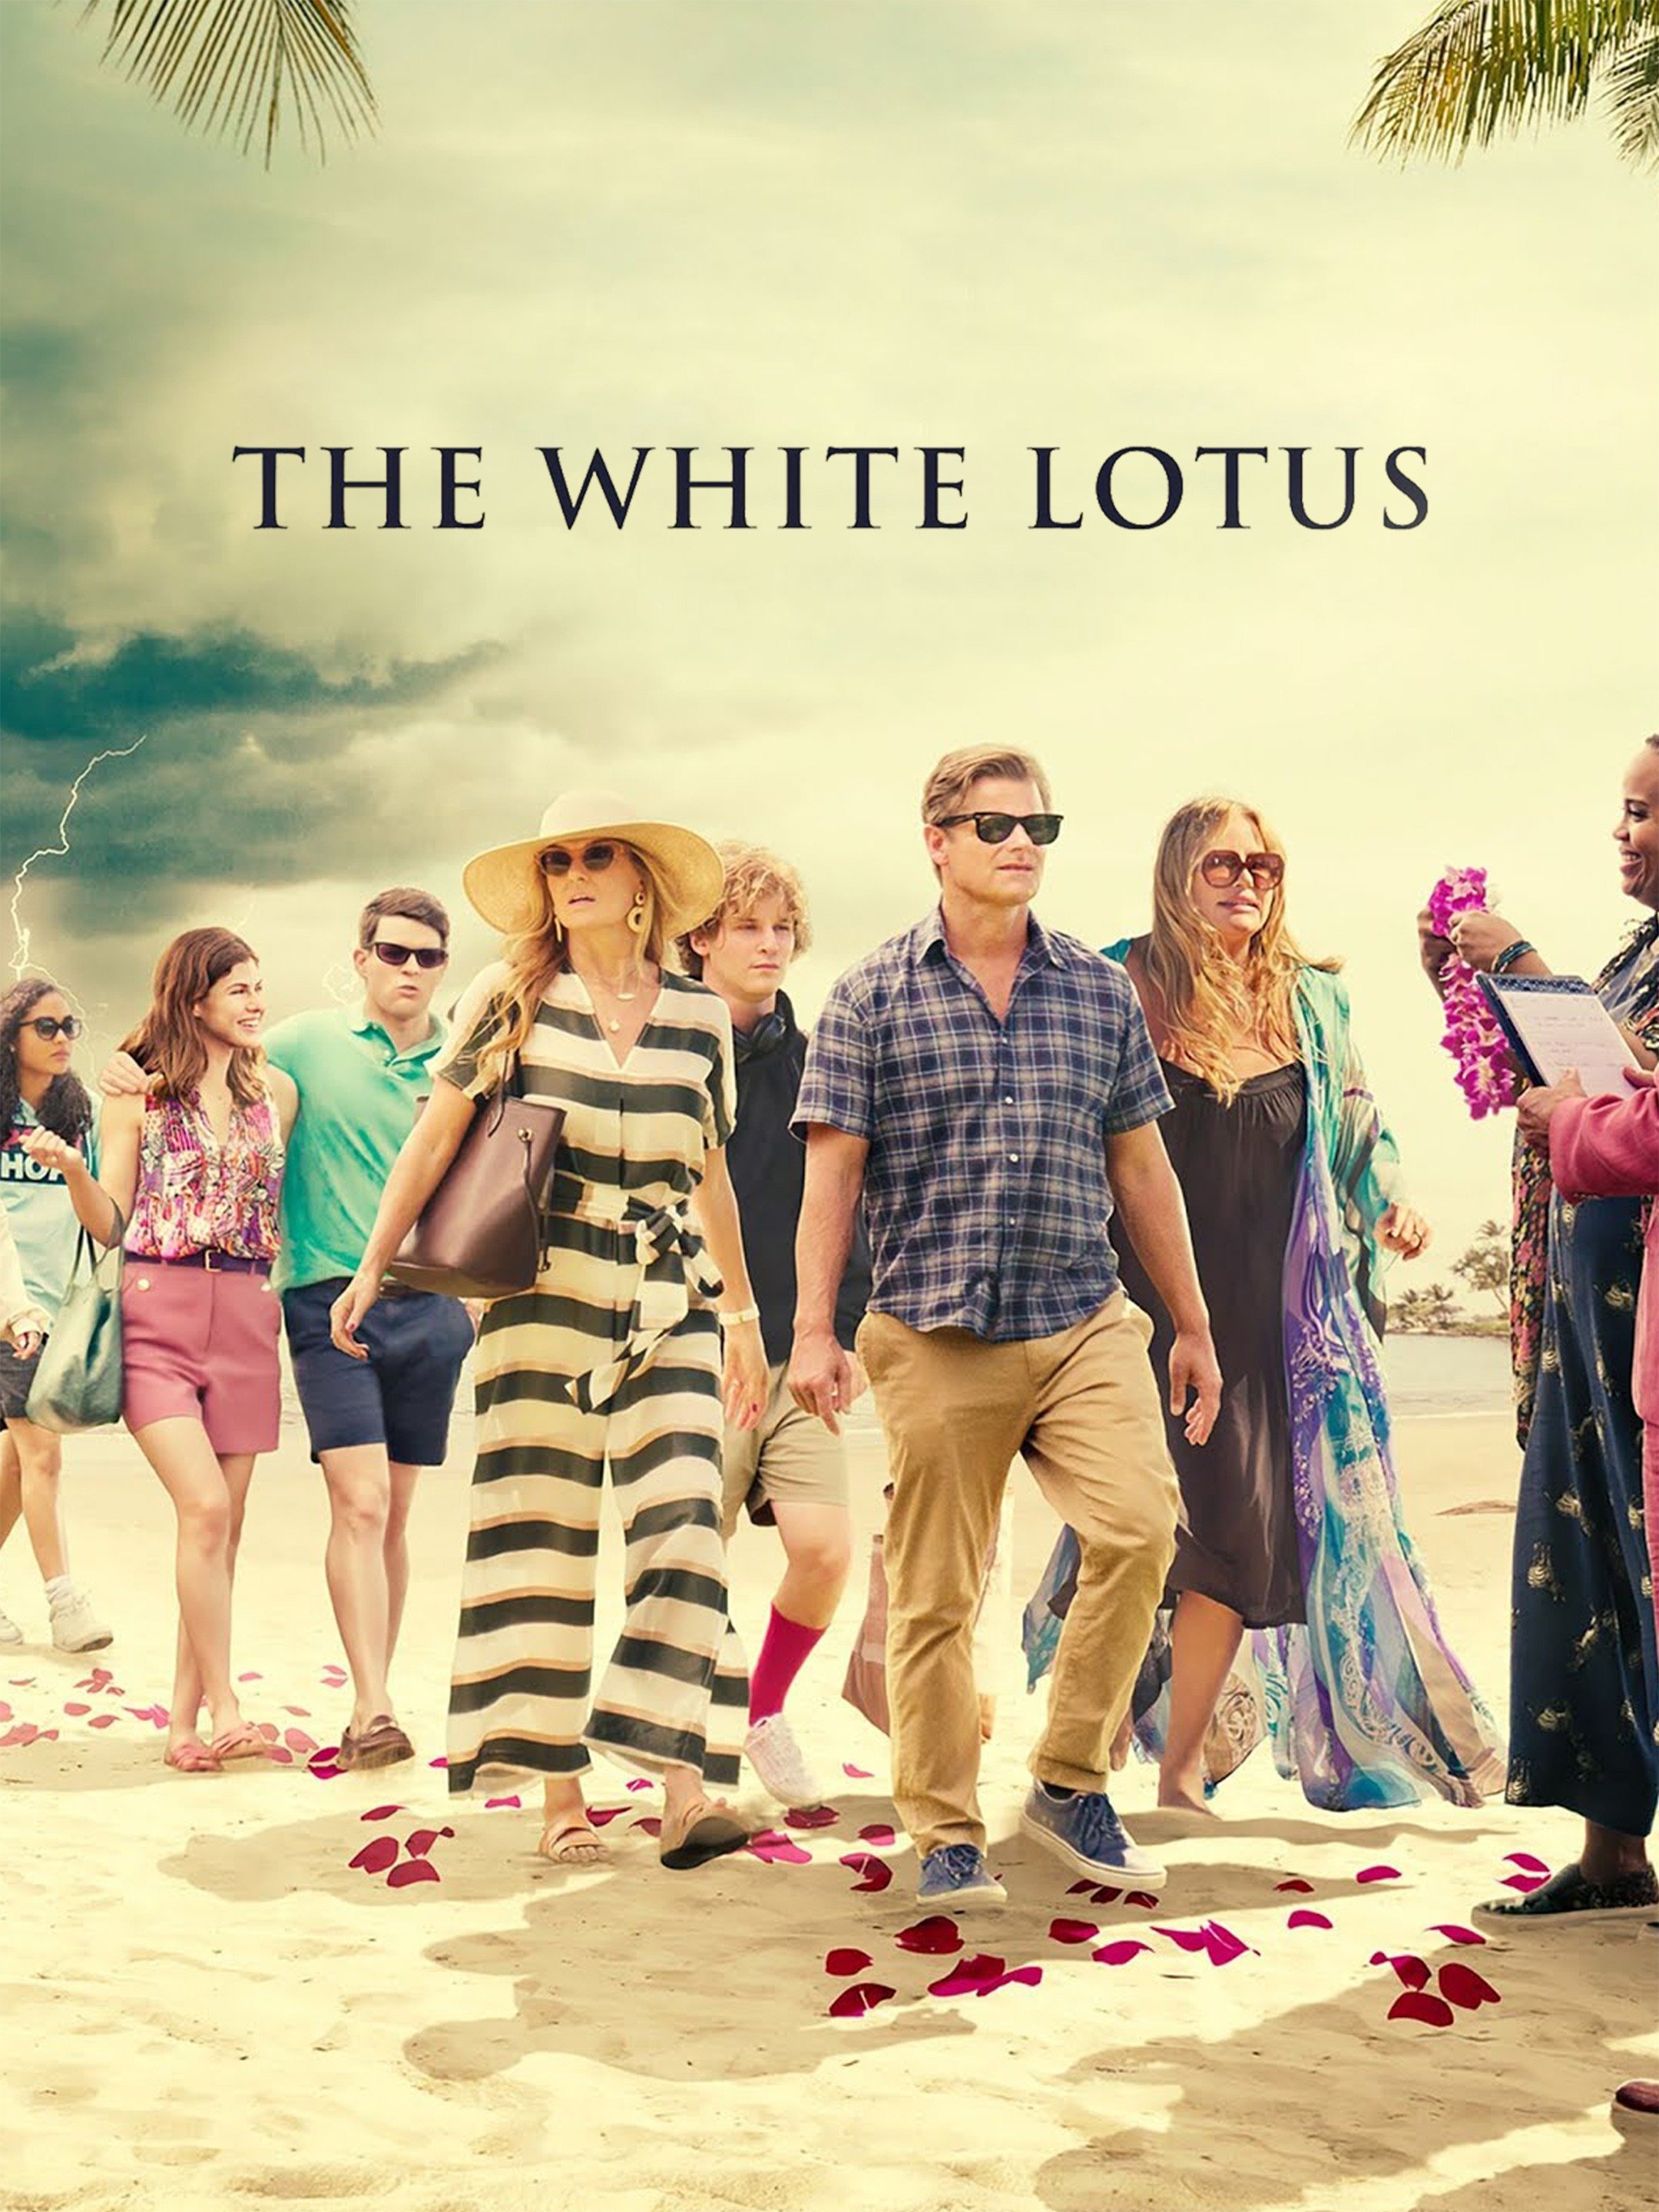 The White Lotus season 2 episode 2: Will Tanya get revenge on Greg